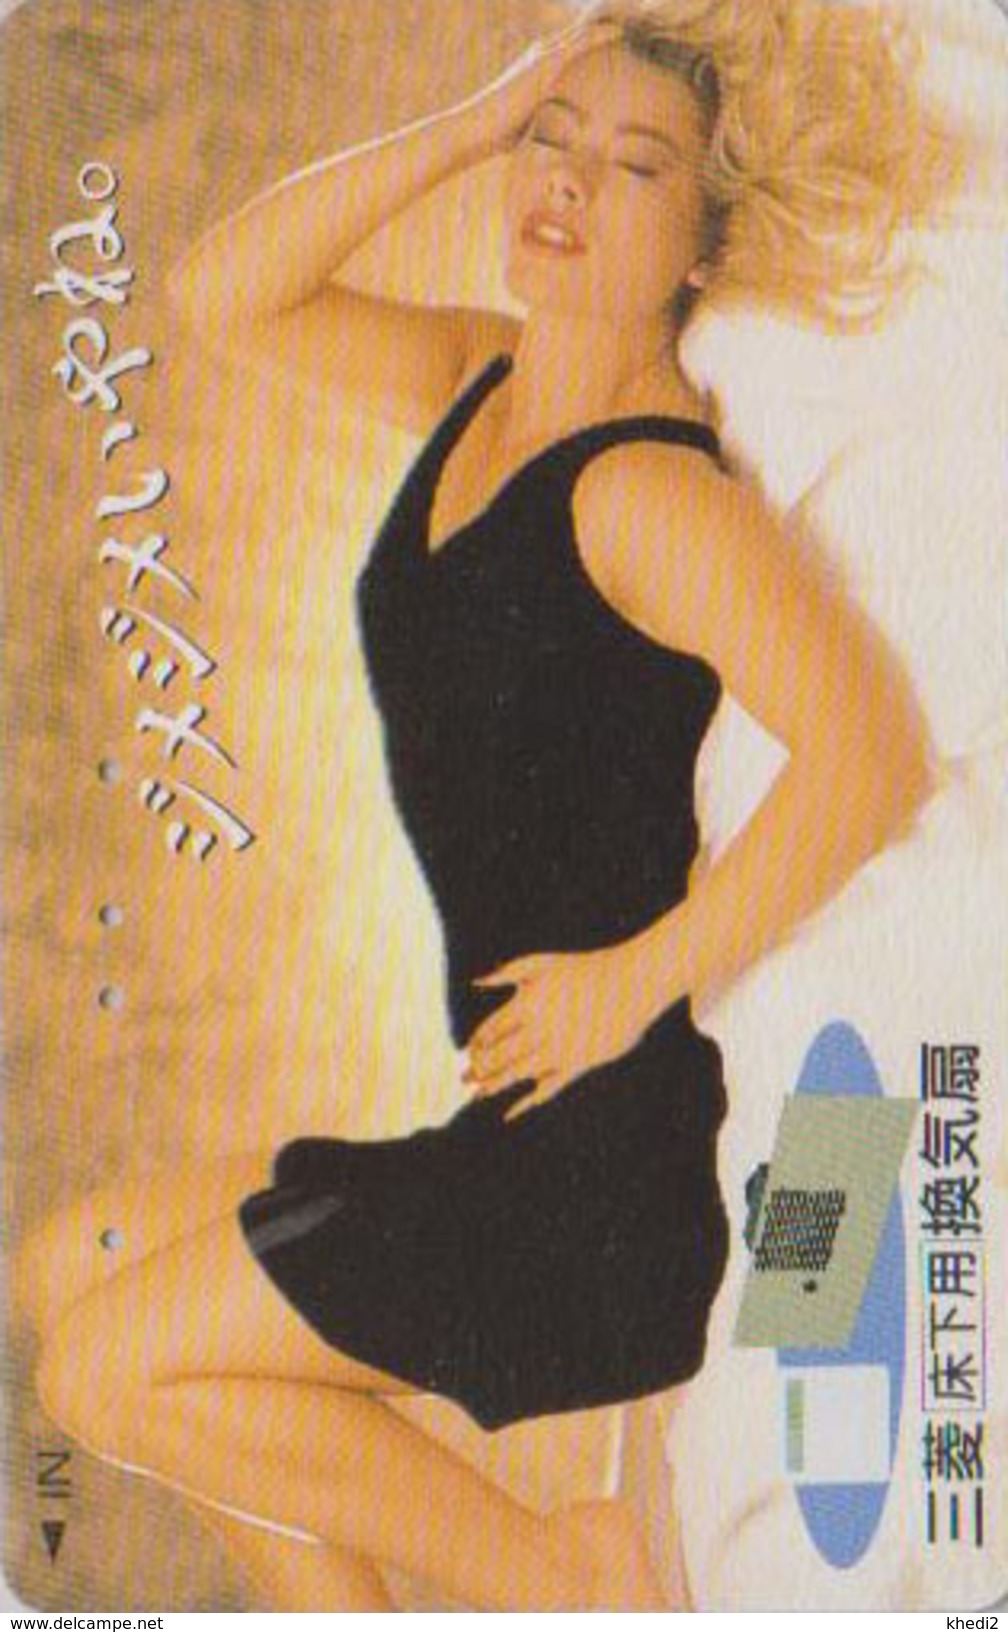 Télécarte THERMIQUE Japon / 110-011 - FEMME EROTIQUE - EROTIC GIRL Japan Thermo Phonecard - EROTIK FRAU - 2893 - Giappone